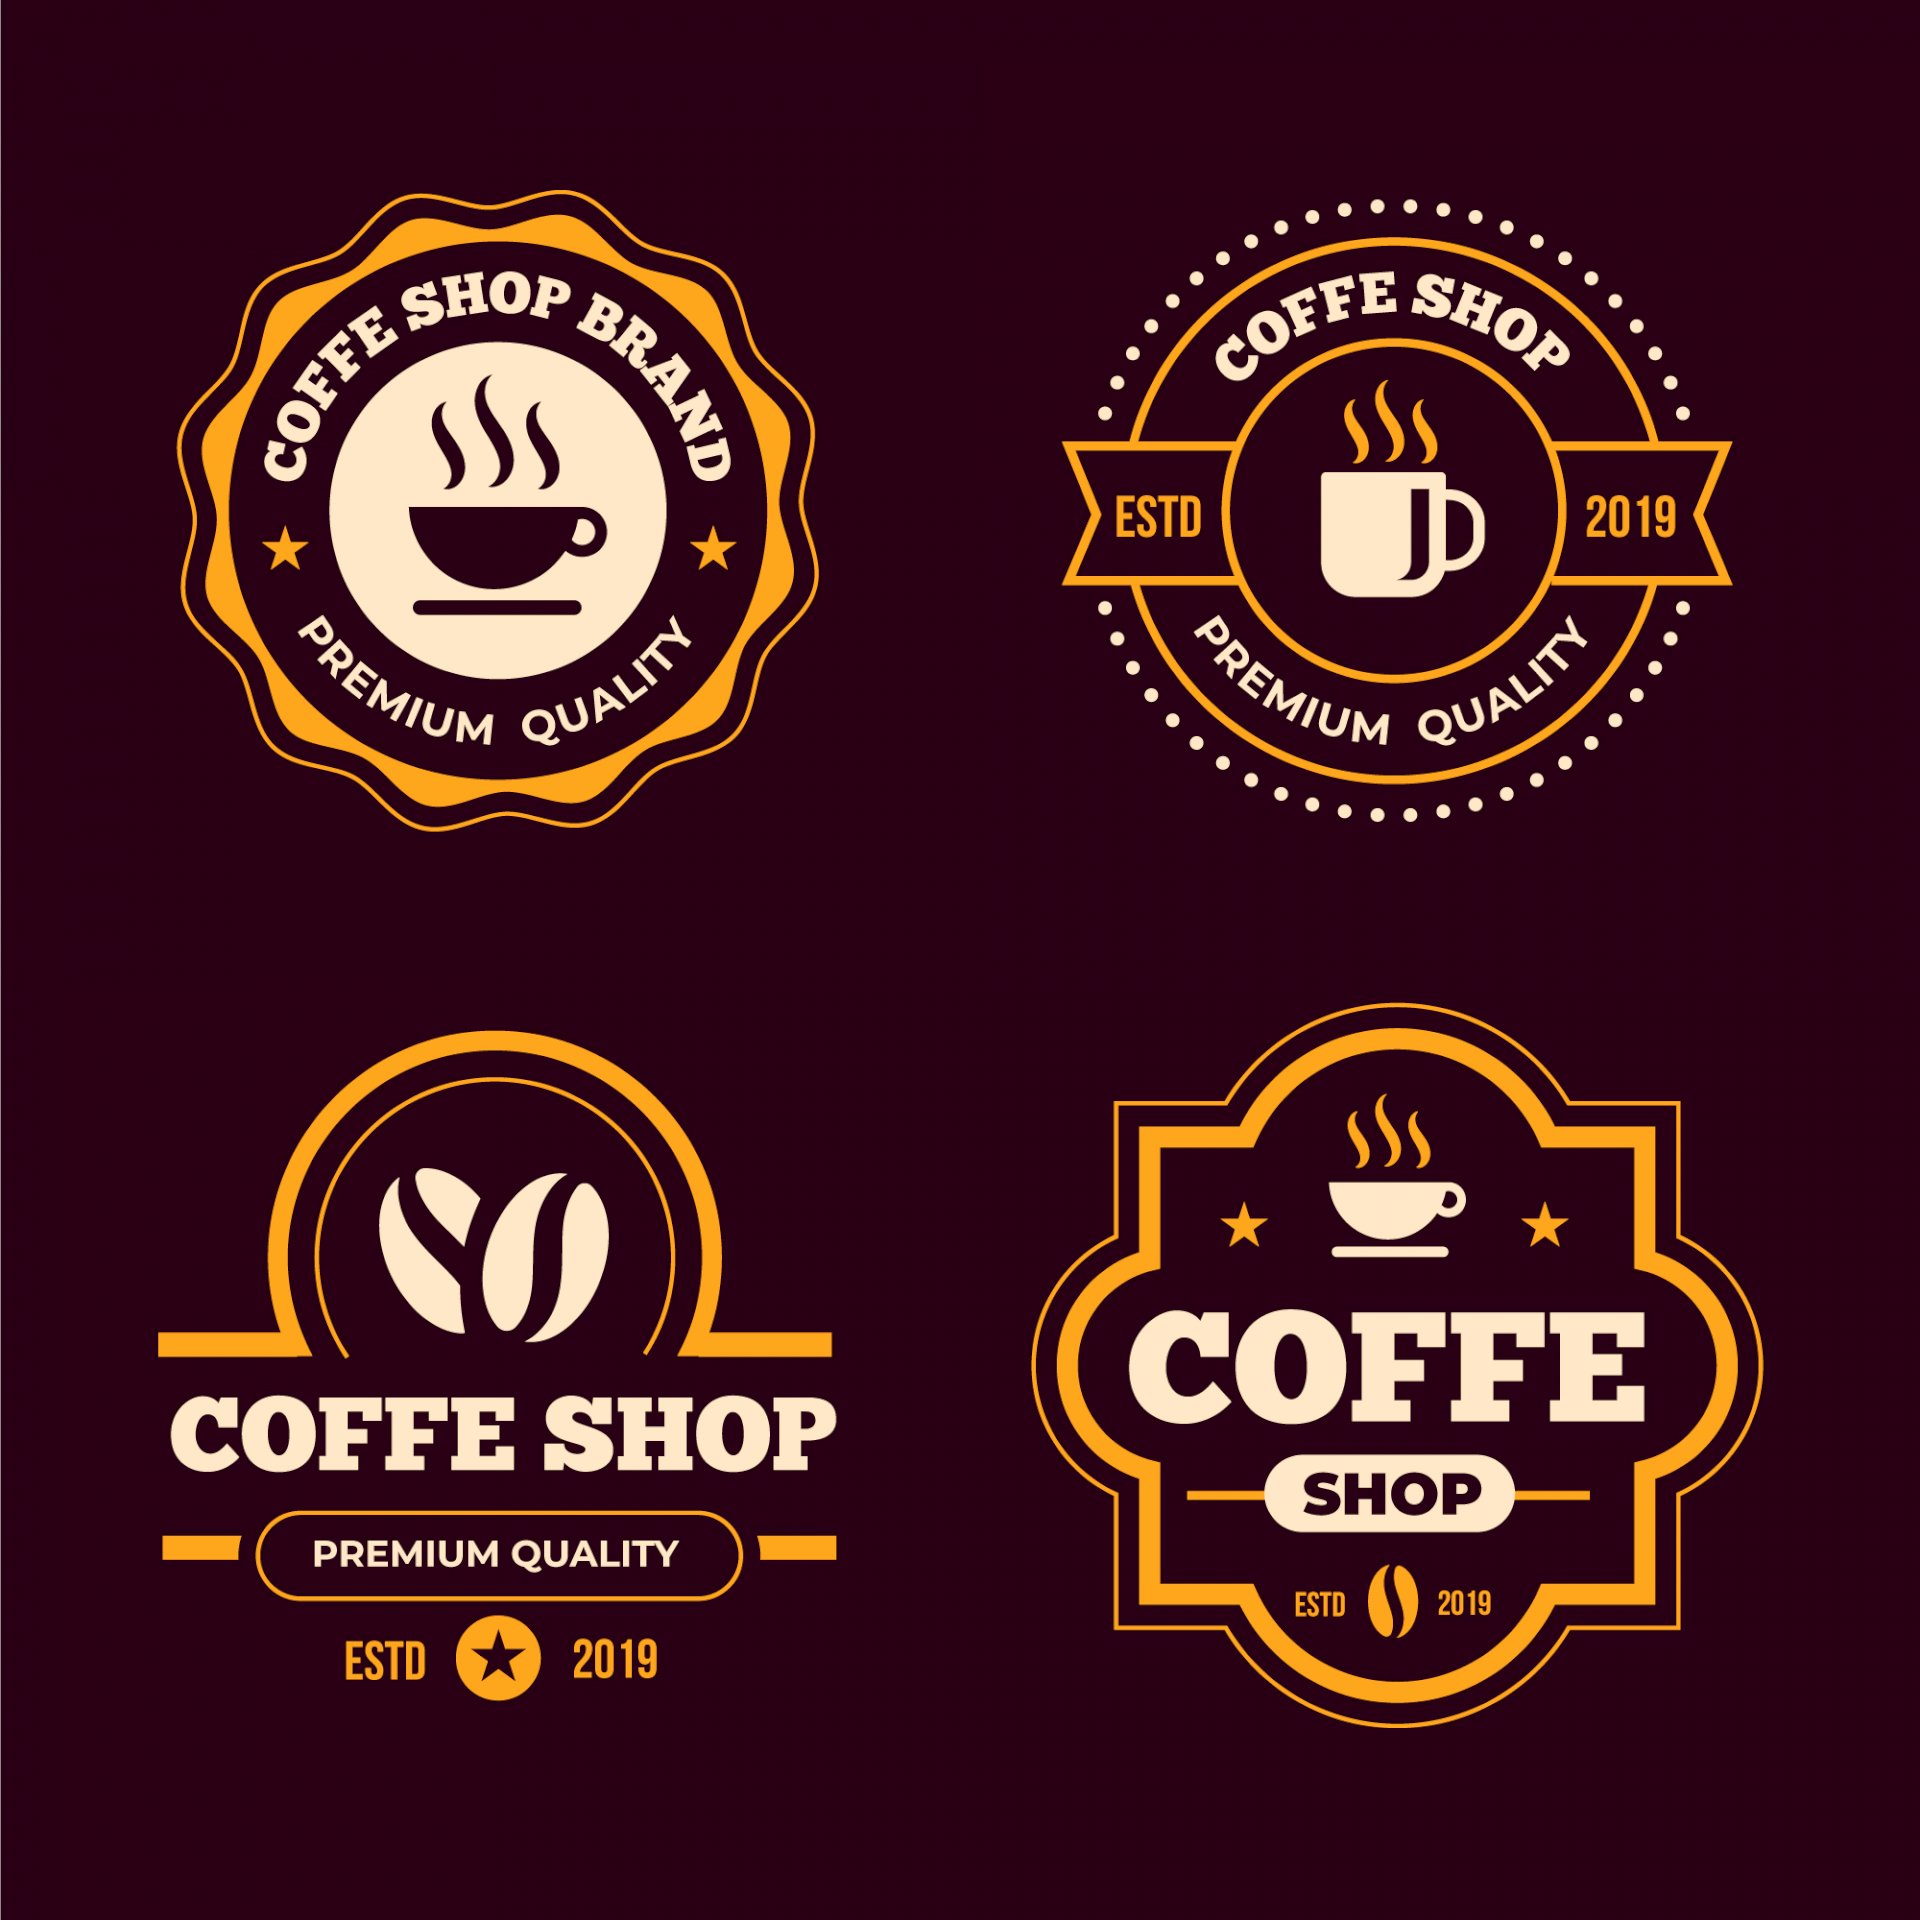 Cách tải và sử dụng file vector logo quán cà phê?
